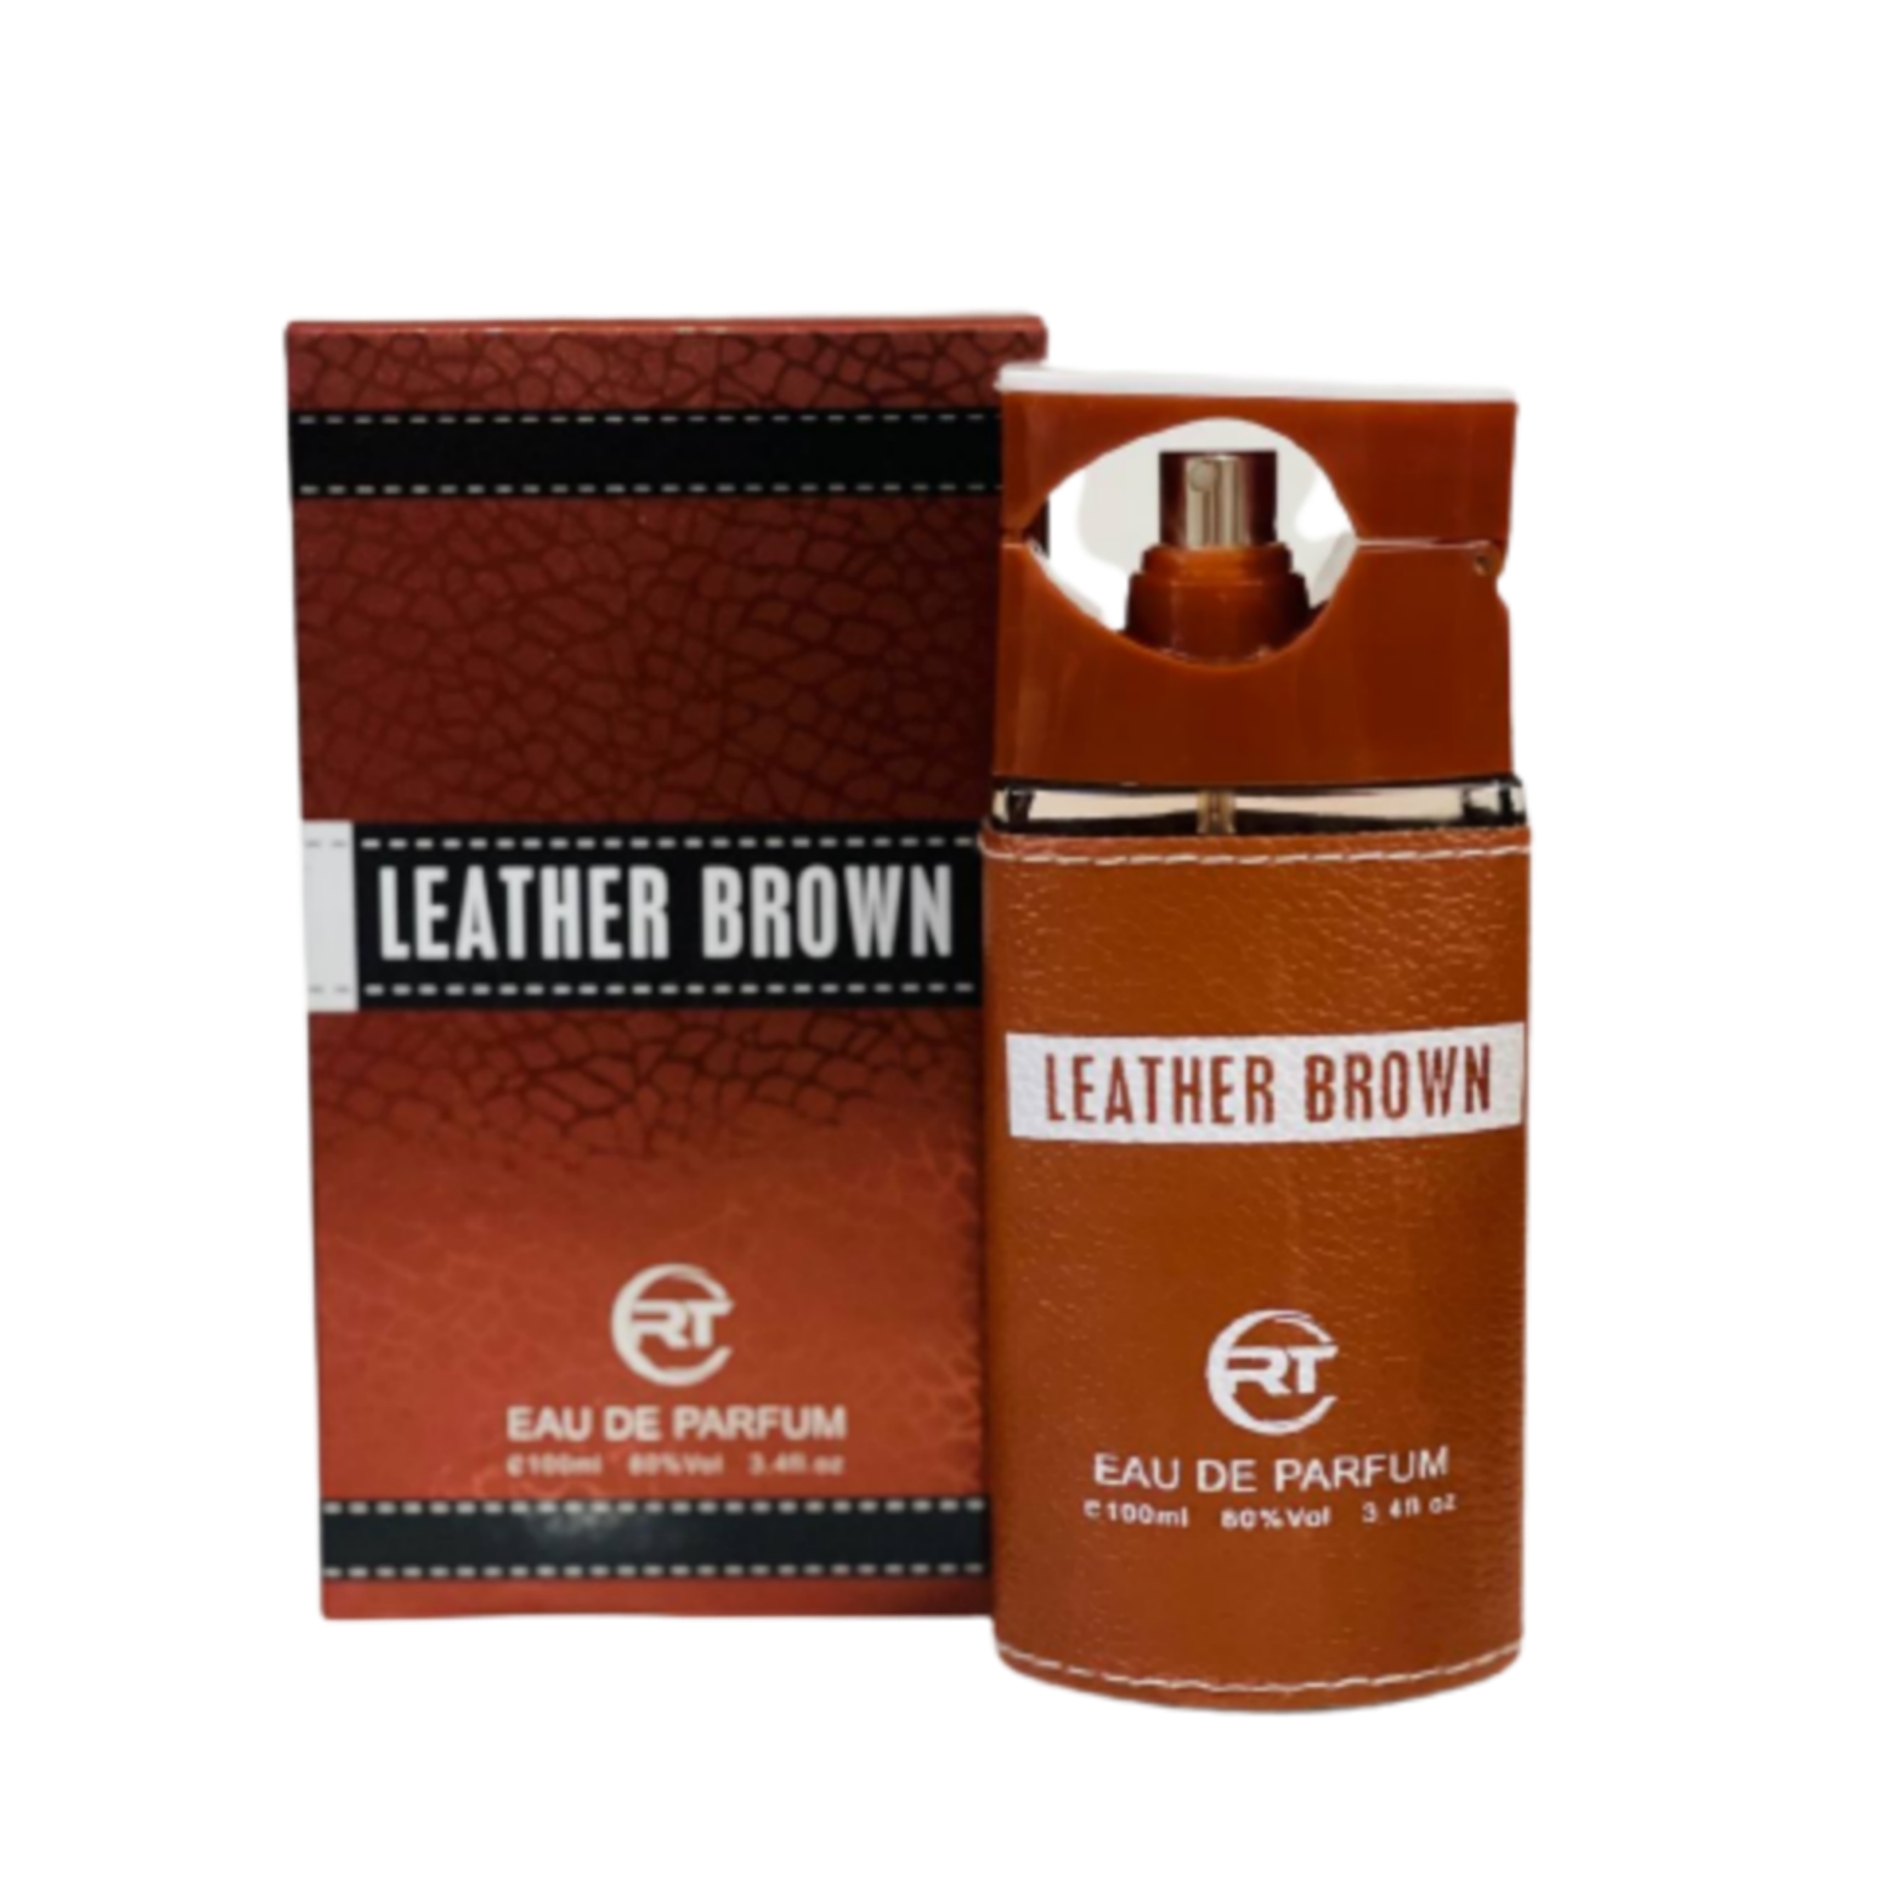 ادو پرفیوم مردانه آر تی مدل leather brown حجم 100 میلی لیتر